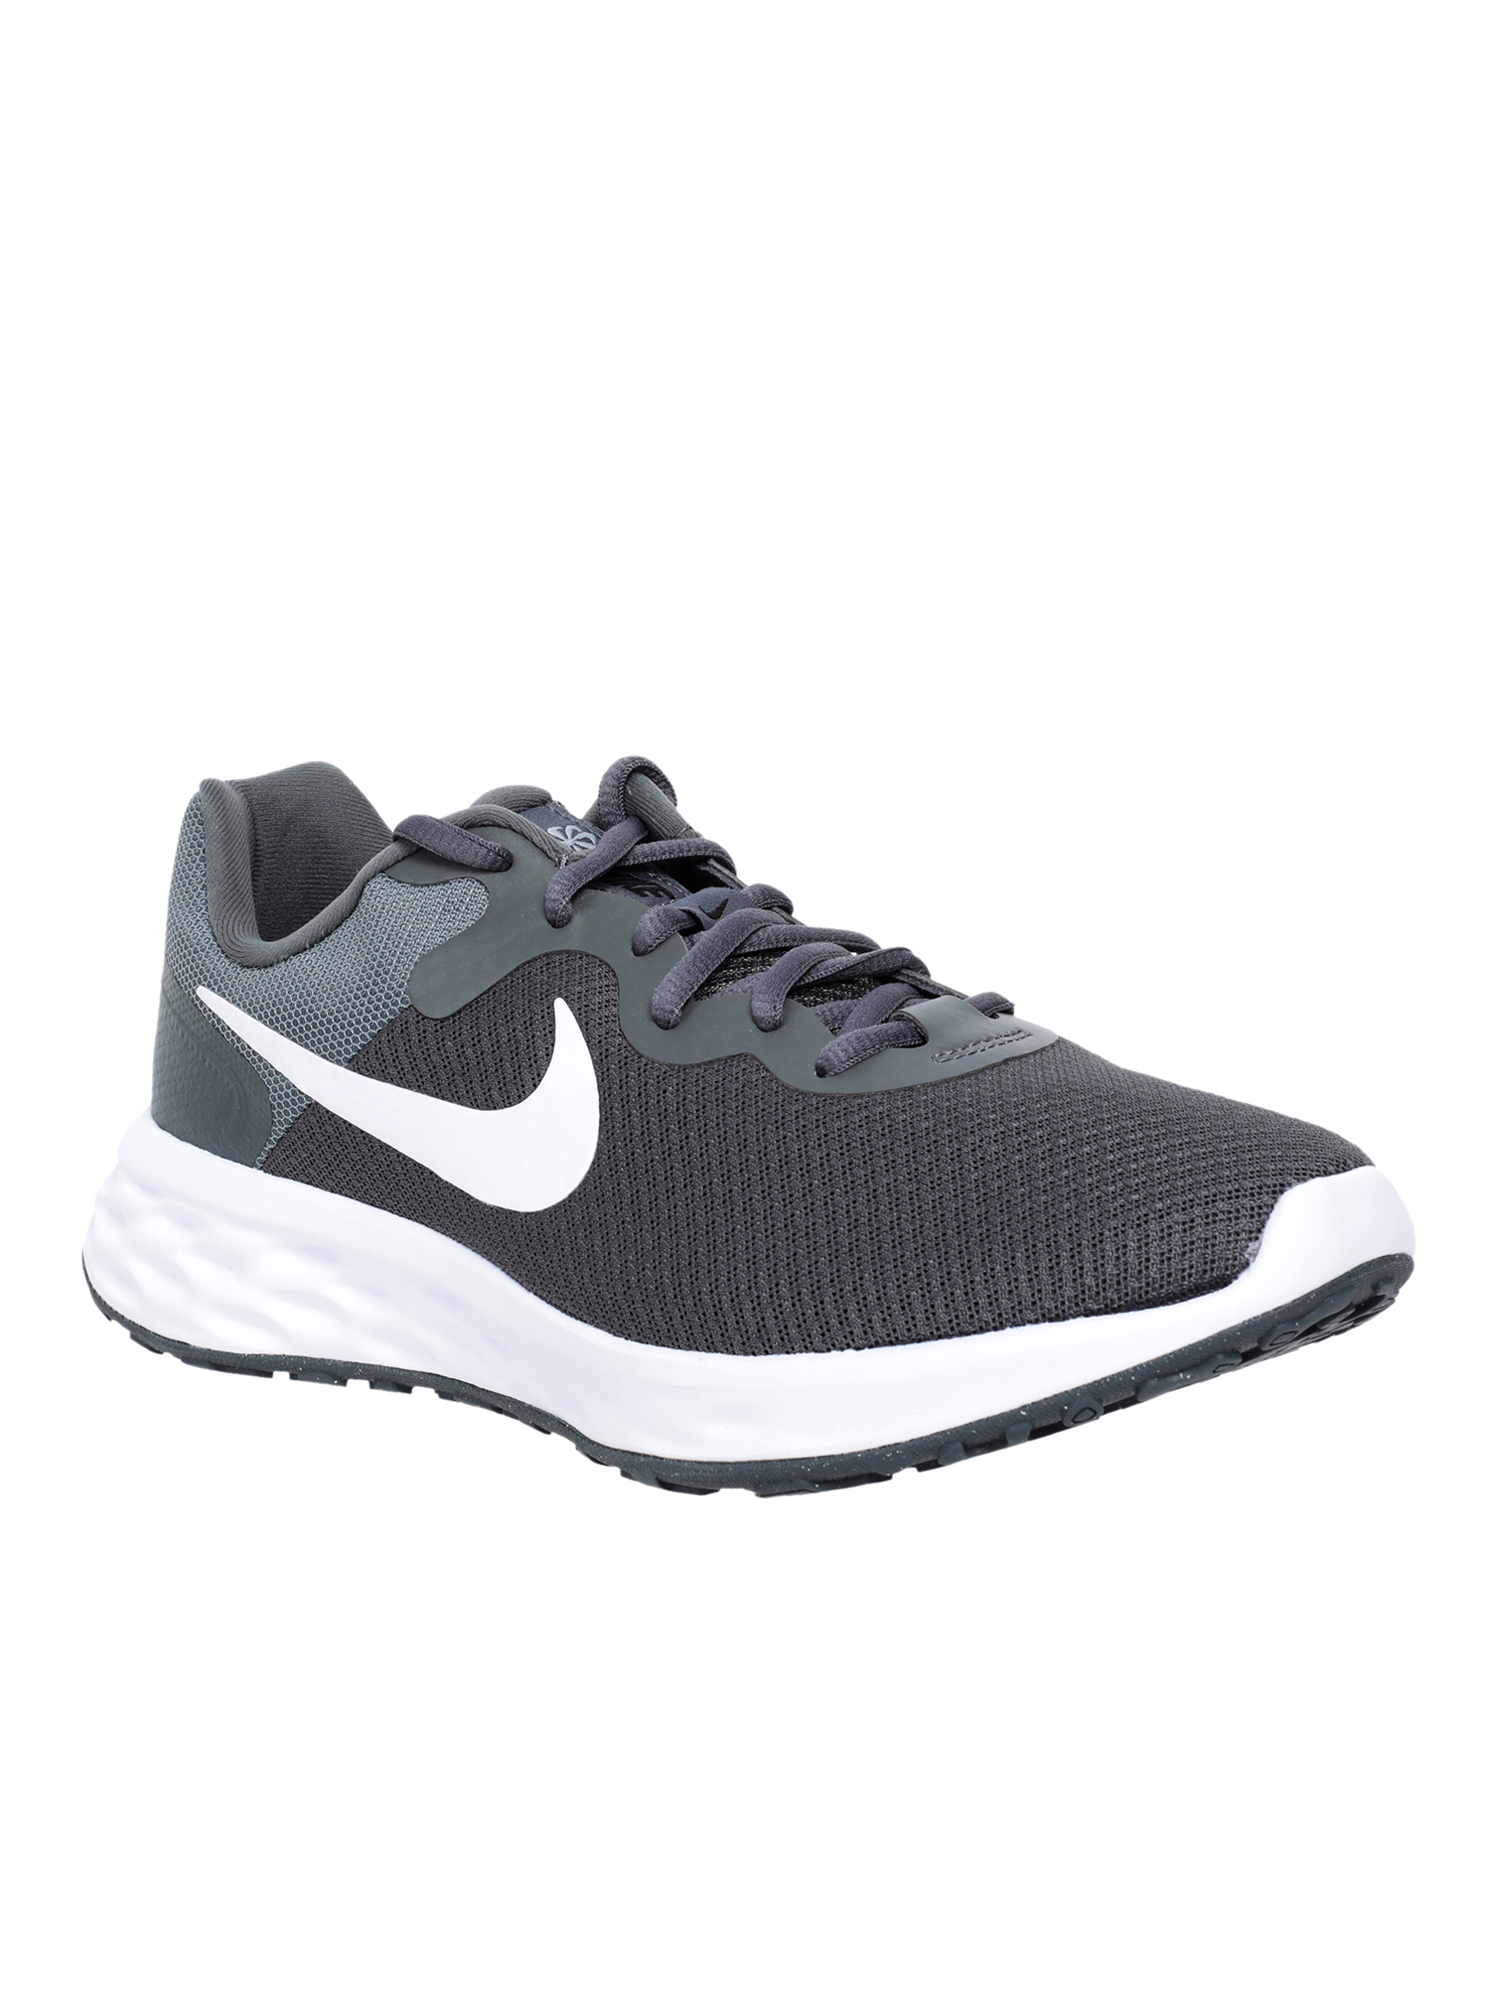 Кроссовки мужские Nike Revolution 6 Nn серые 12.5 US